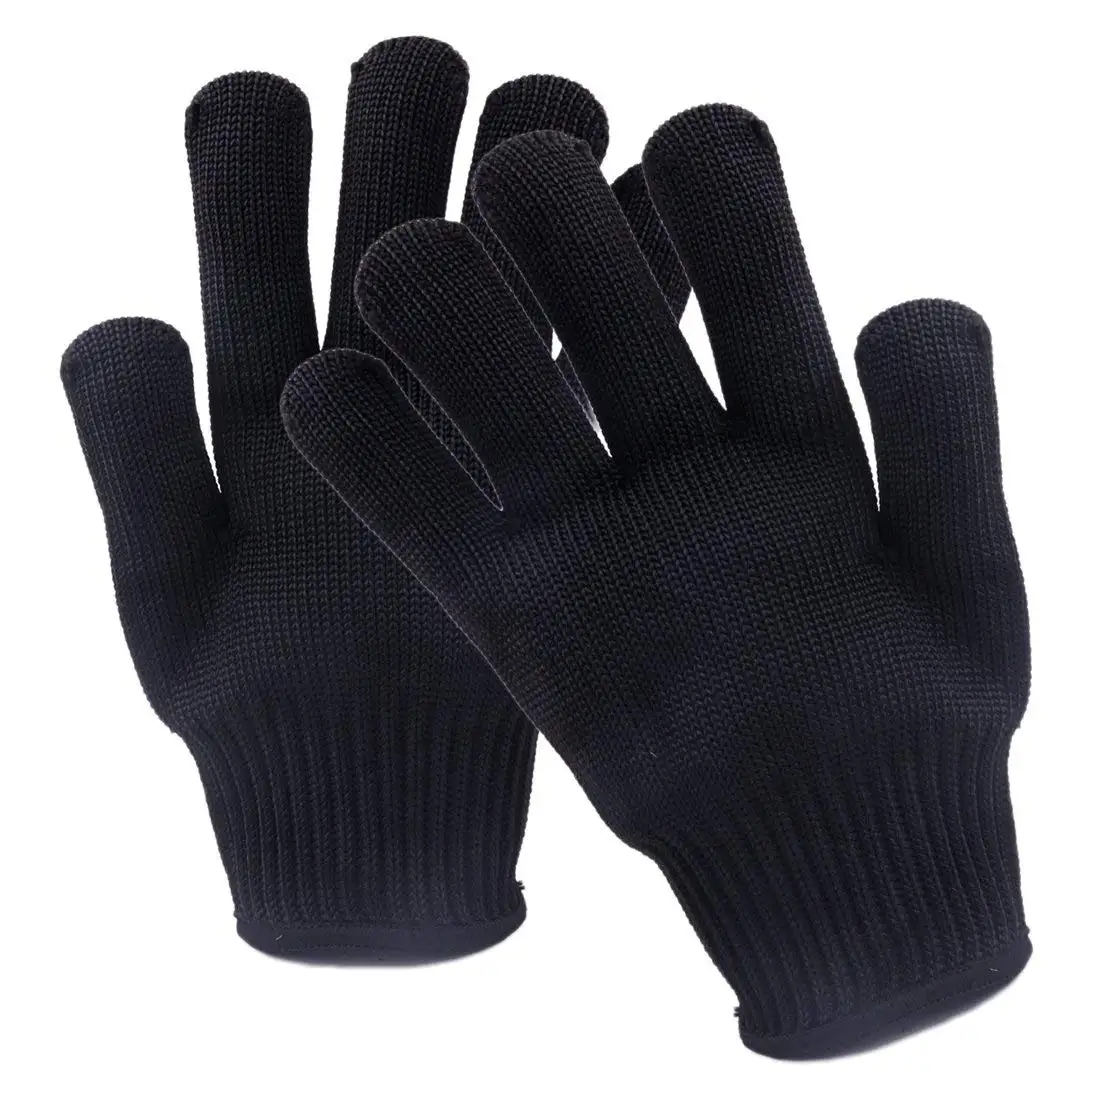 Защитные перчатки с защитой от порезов, защитные перчатки для самозащиты, 5 сорт, проволочные перчатки, усиленные, белые, многоцелевые, износостойкие